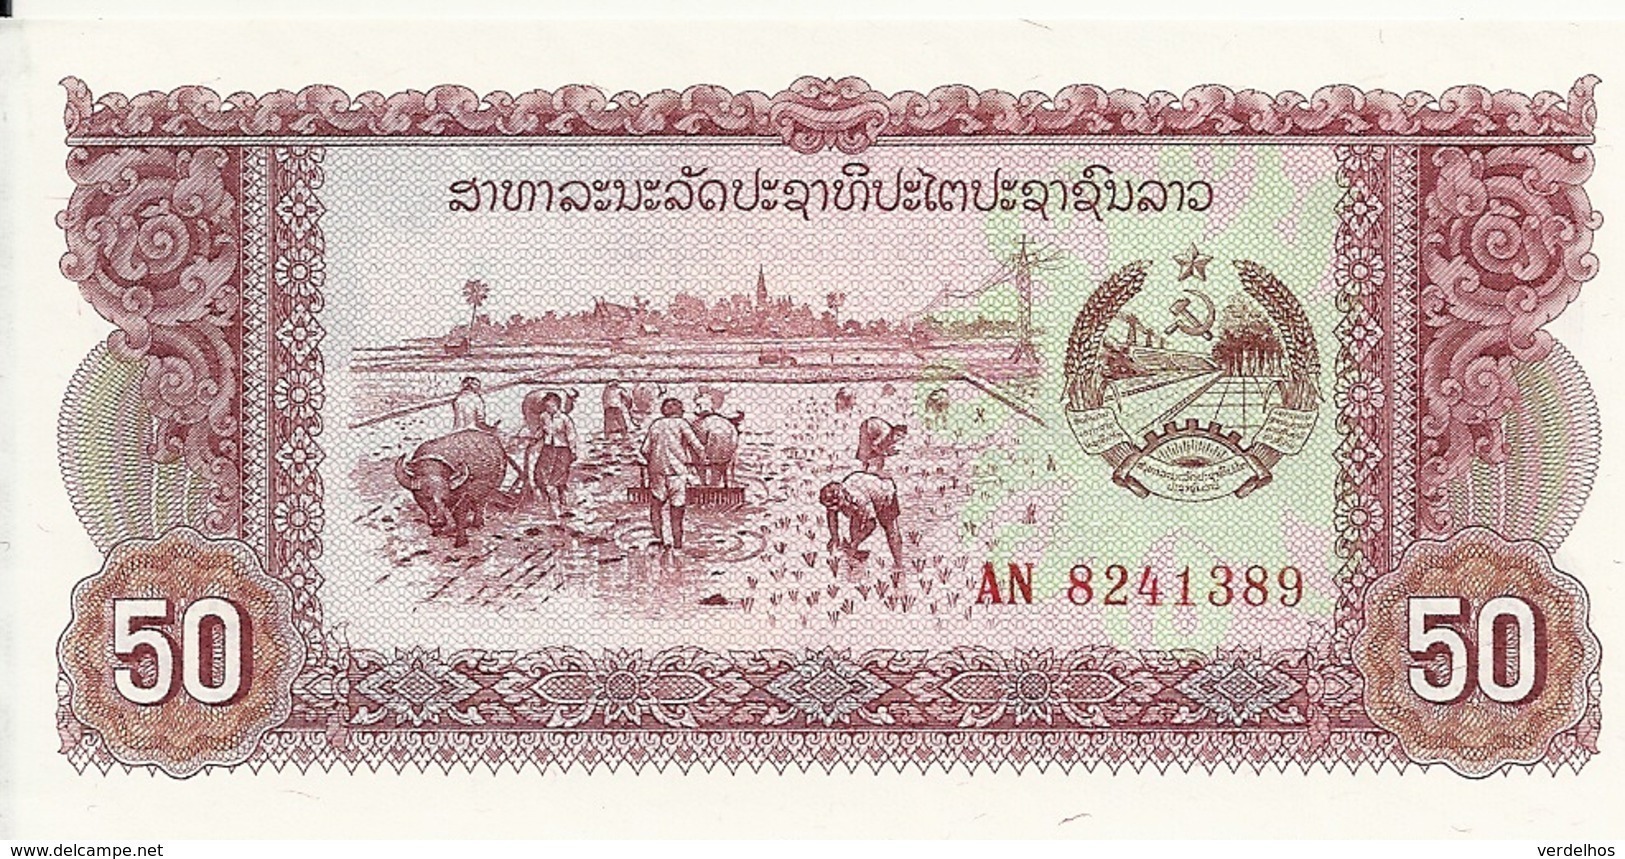 LAOS 50 KIP ND1979 UNC P 29 - Laos